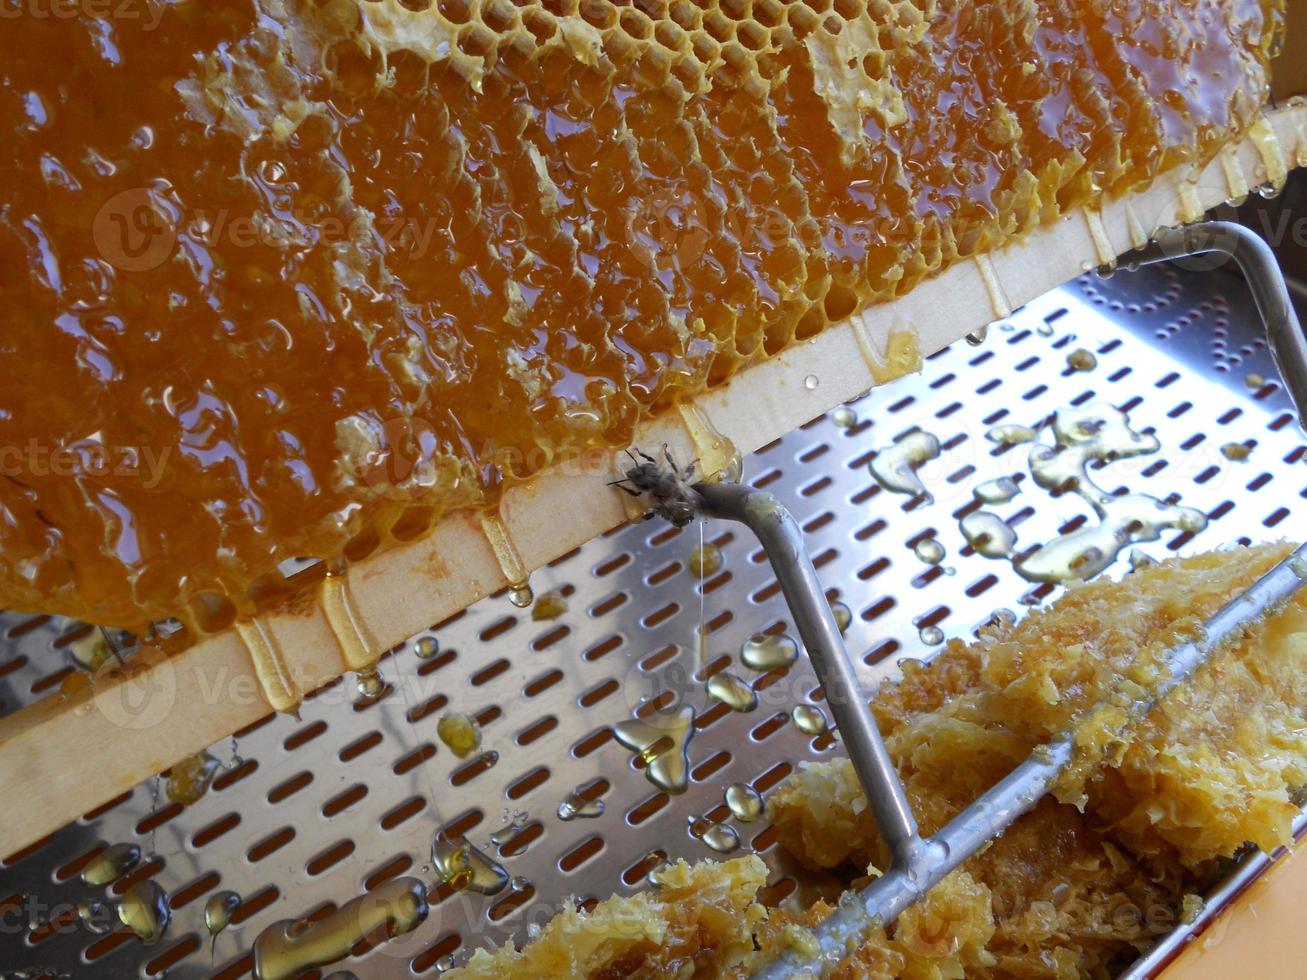 textura de hexágono de fundo, favo de mel de cera de uma colmeia de abelhas foto